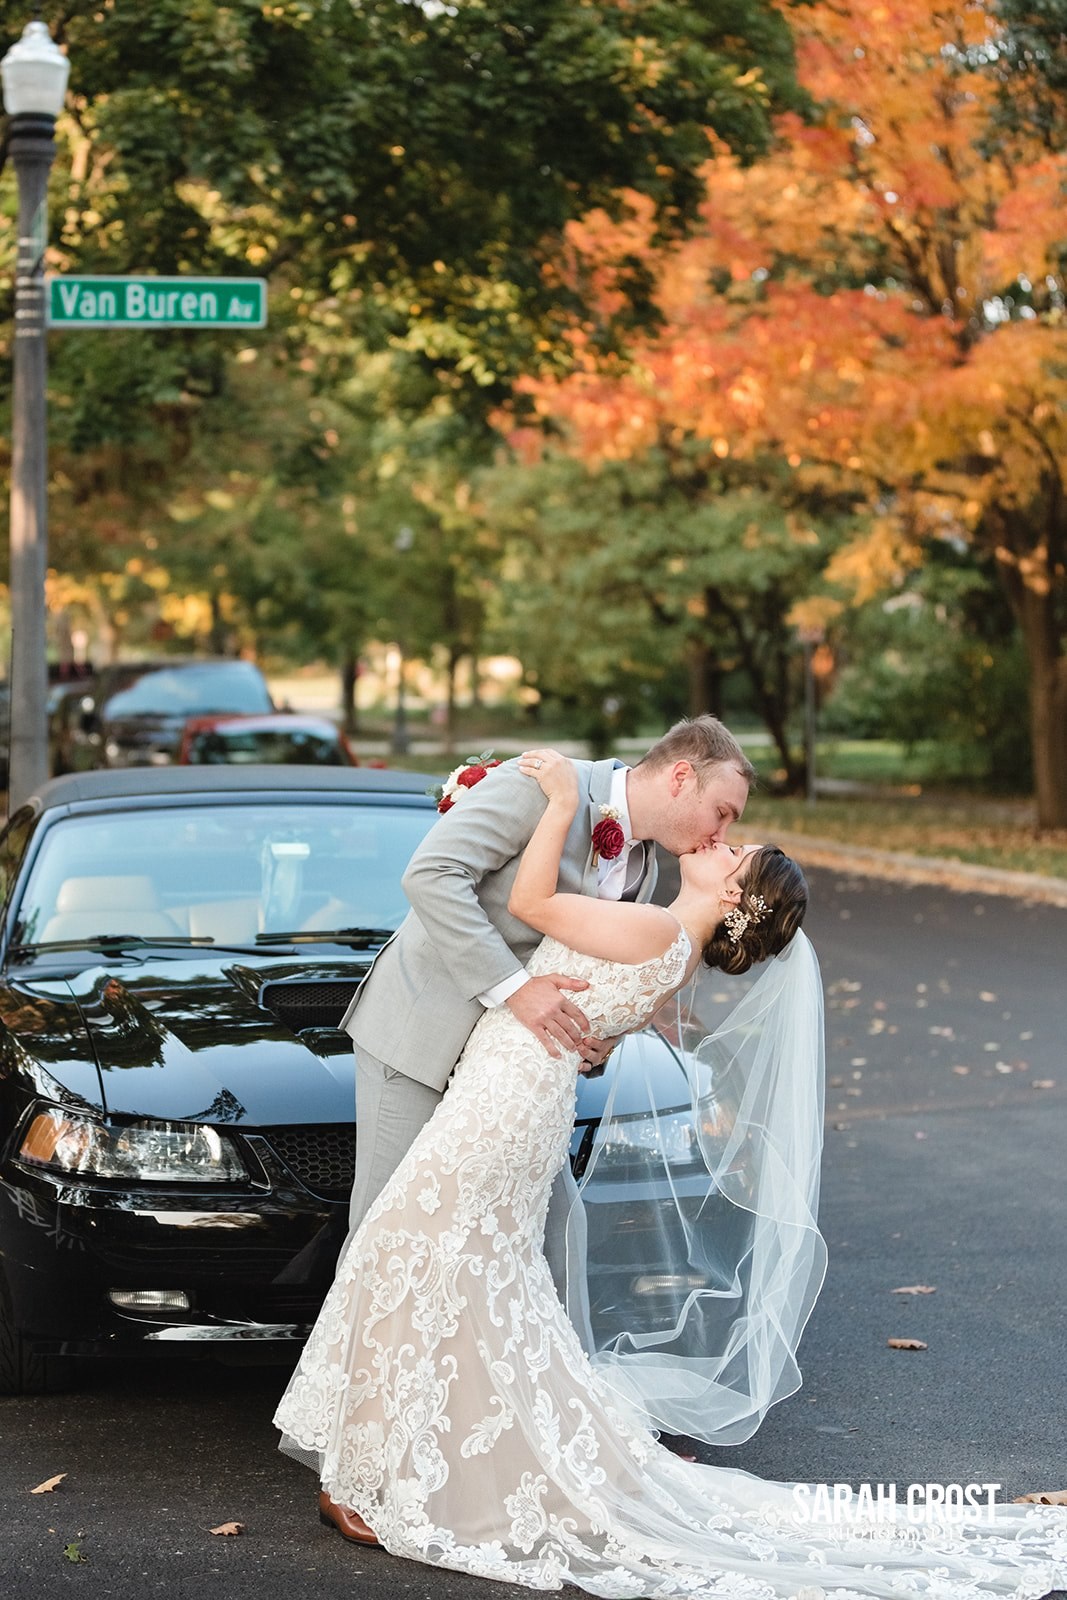 Naperville wedding couple kissing in front of Van Buren Ave.